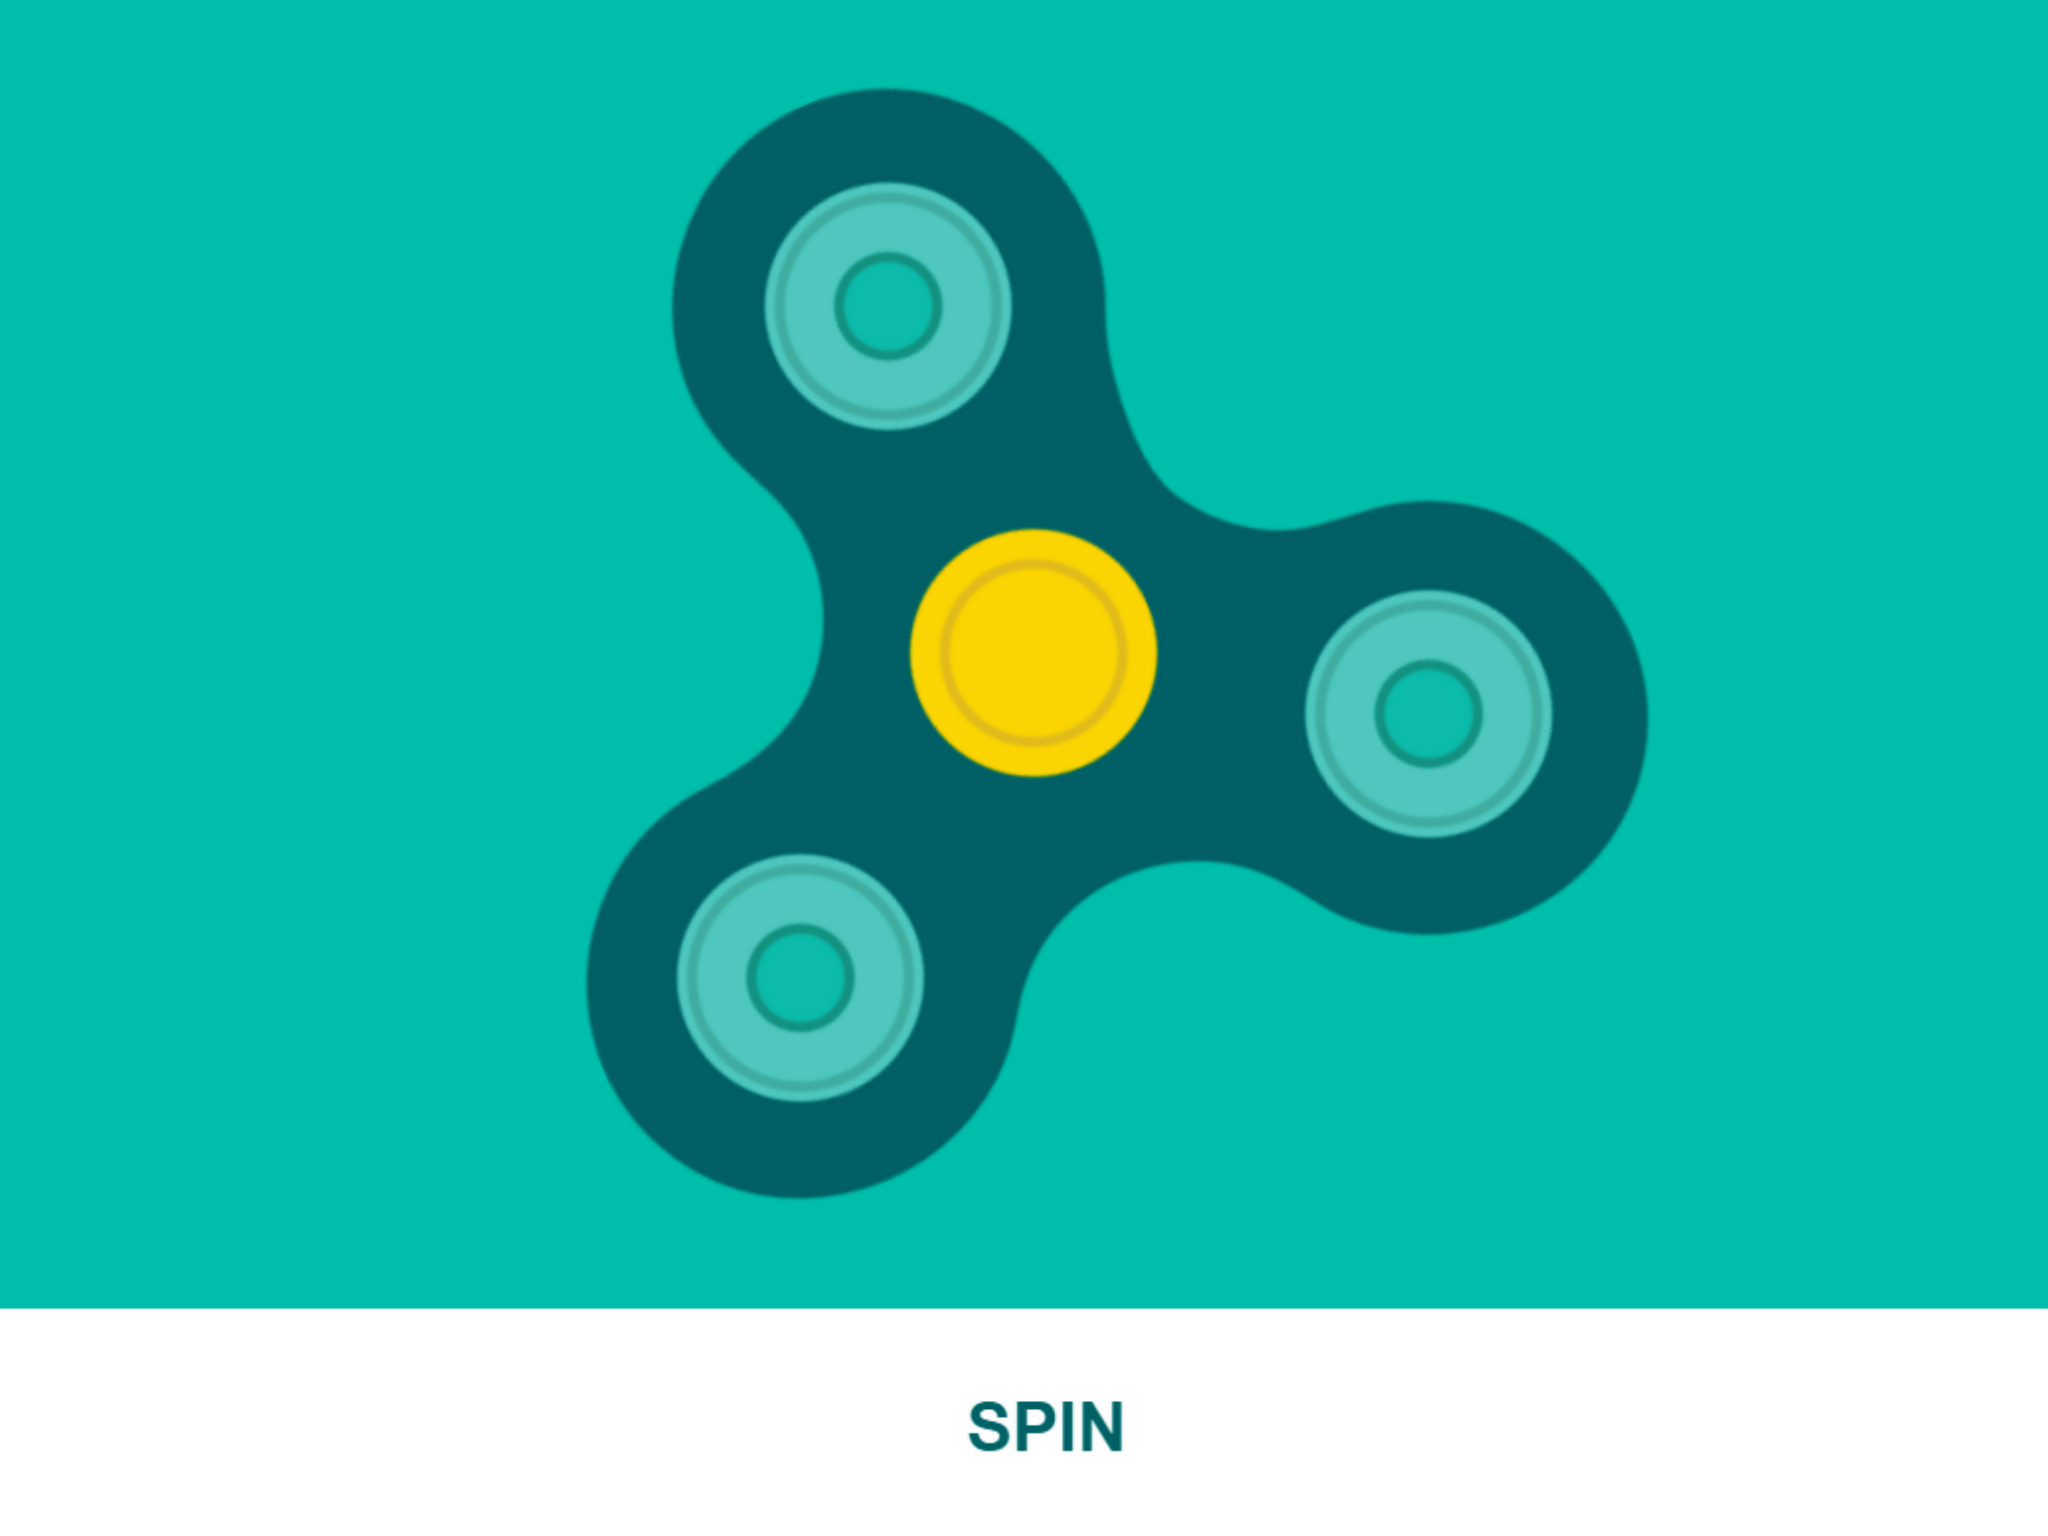 Fidget Spinner - Apps on Google Play